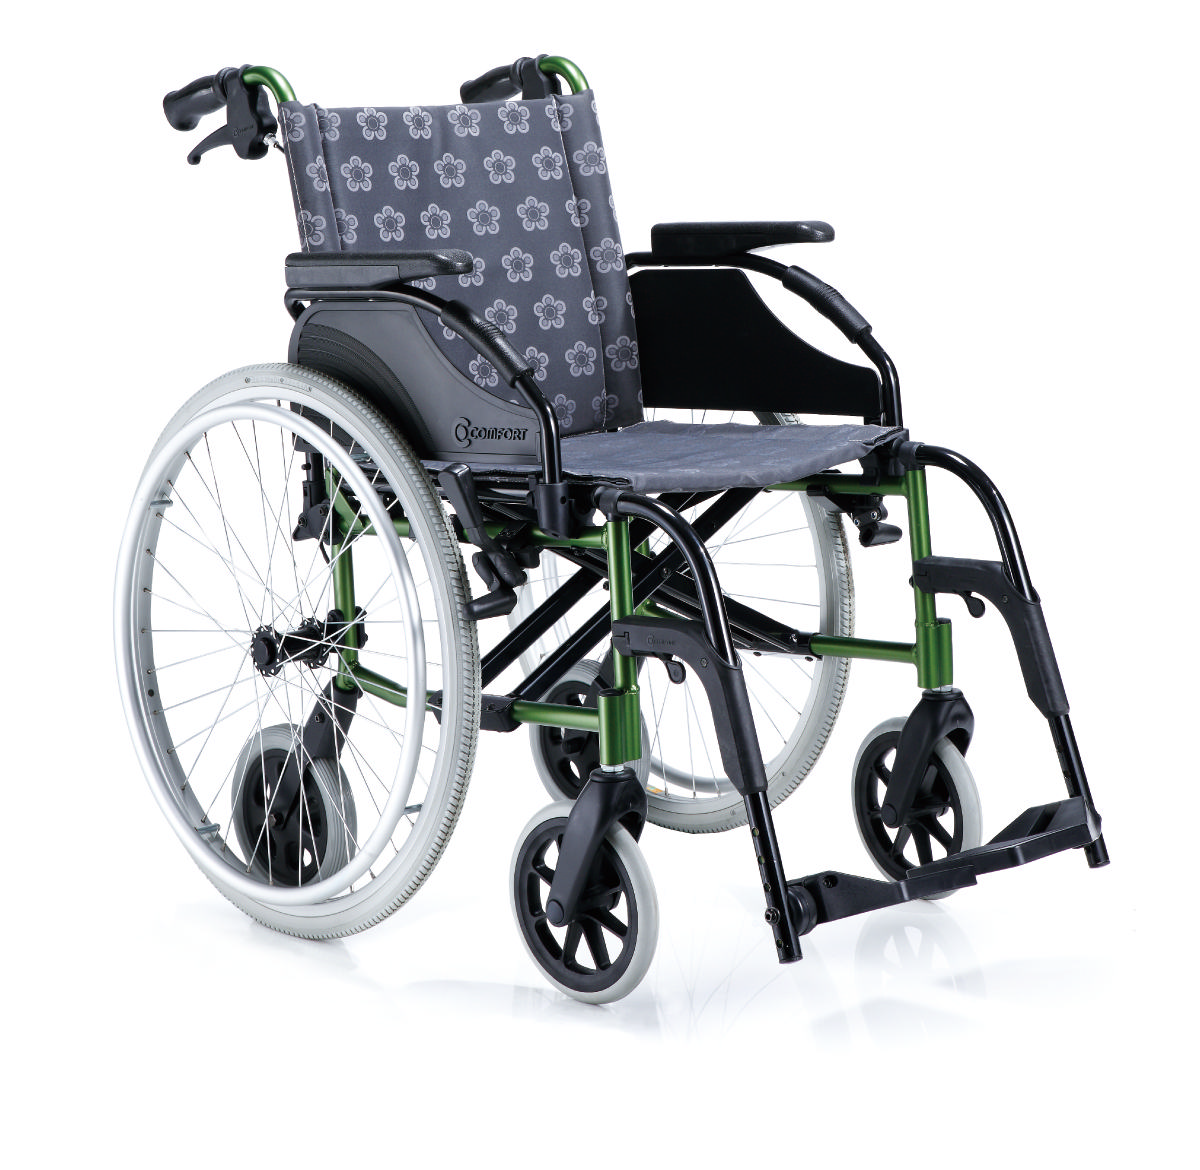 Comfort K8-80824 indoor outdoor wheelchair 1